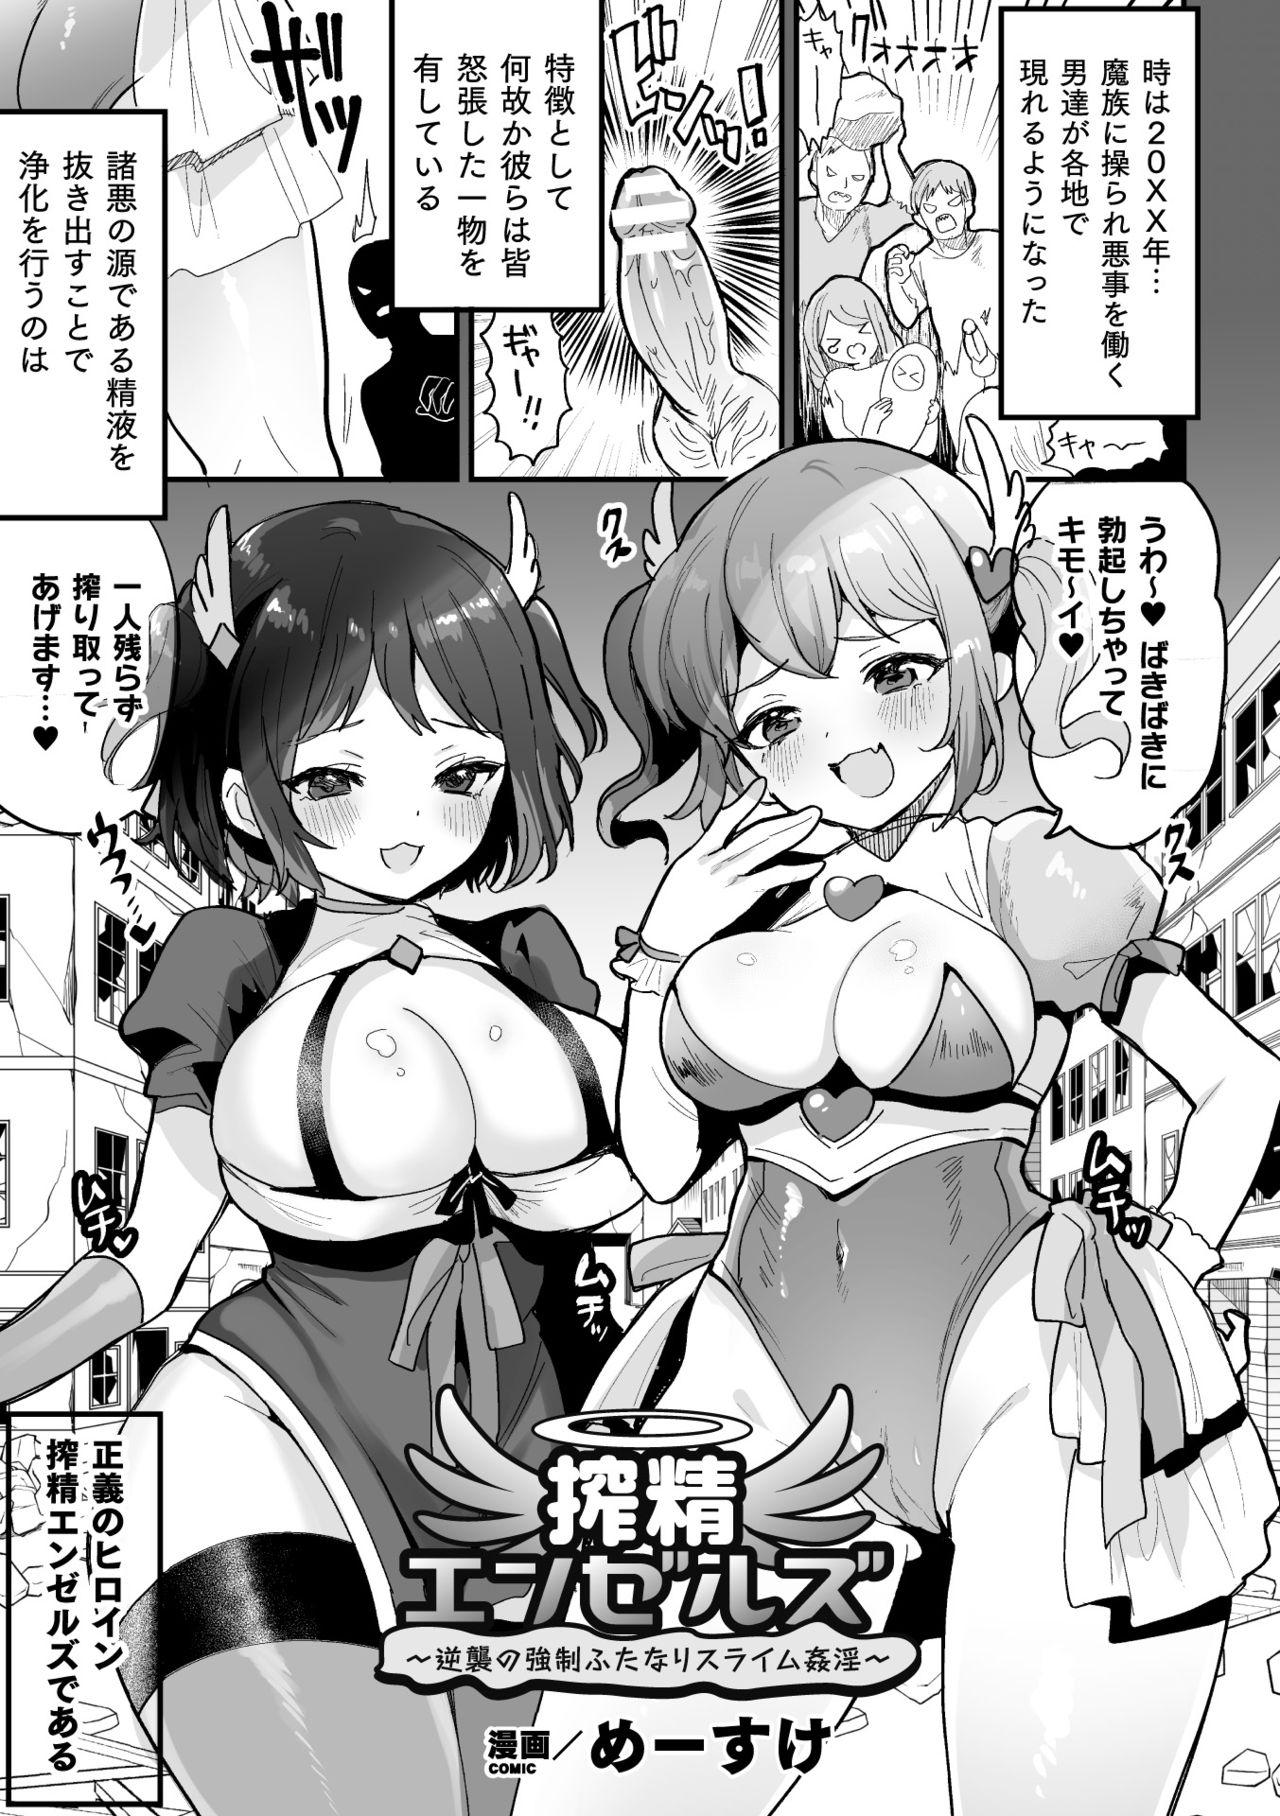 Futa 2D Comic Magazine - Futanari Mesugaki Sakusei Namaiki Zako Mesu Sao o Wakarase Shibori! Vol. 2 Gaygroupsex - Page 3